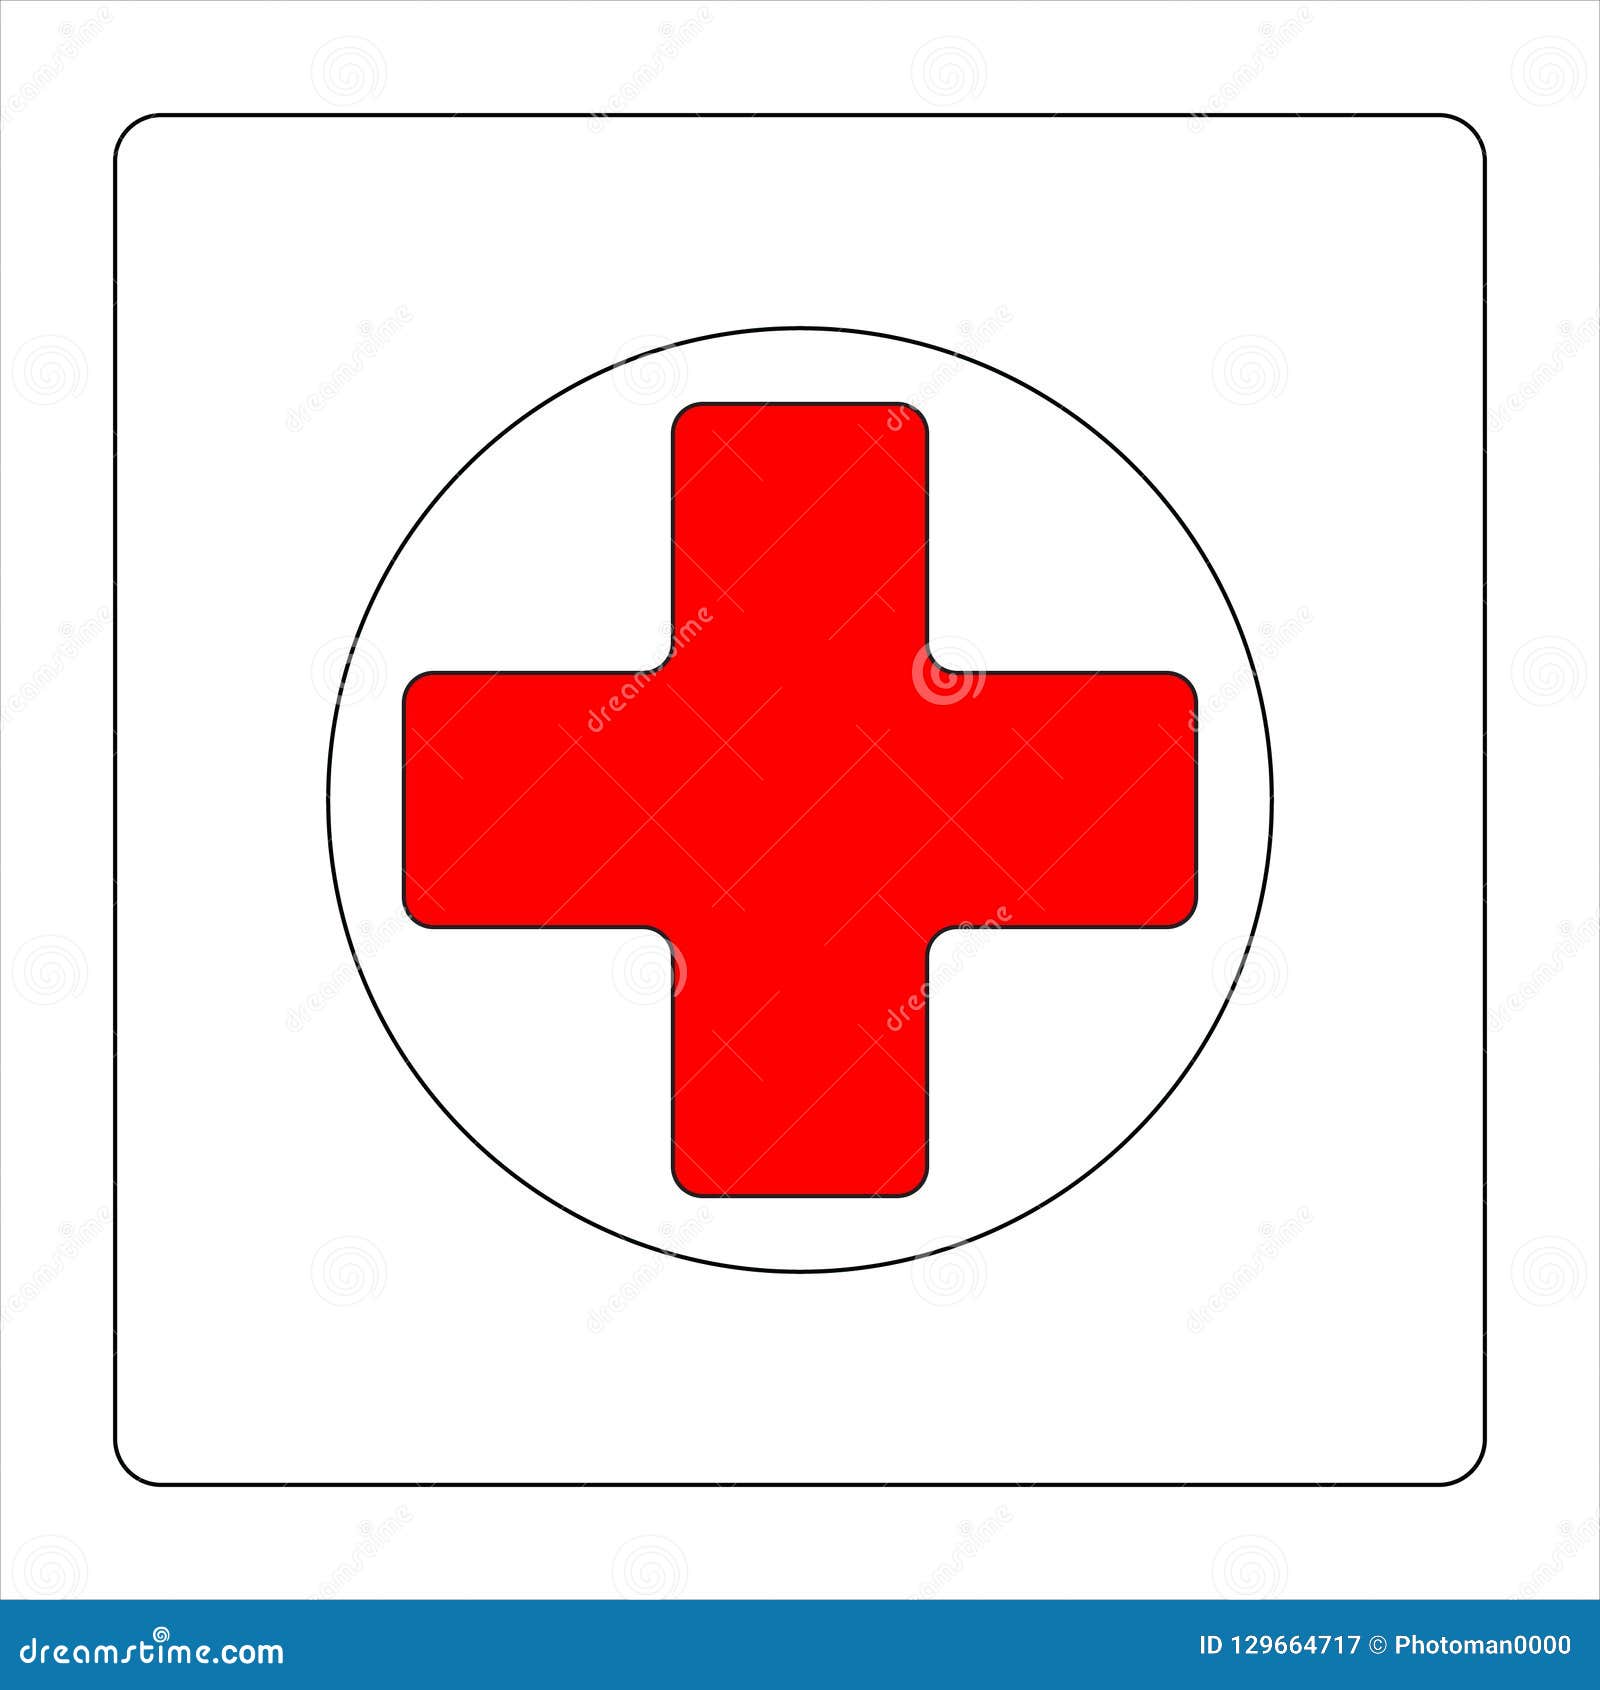 Với hình ảnh liên quan đến logo hồng thập đỏ, bạn sẽ thấy rằng bức tranh hình như thế nào khi cộng đồng toàn cầu đồng lòng với nhau để giúp đỡ những người cần sự yếu đuối.